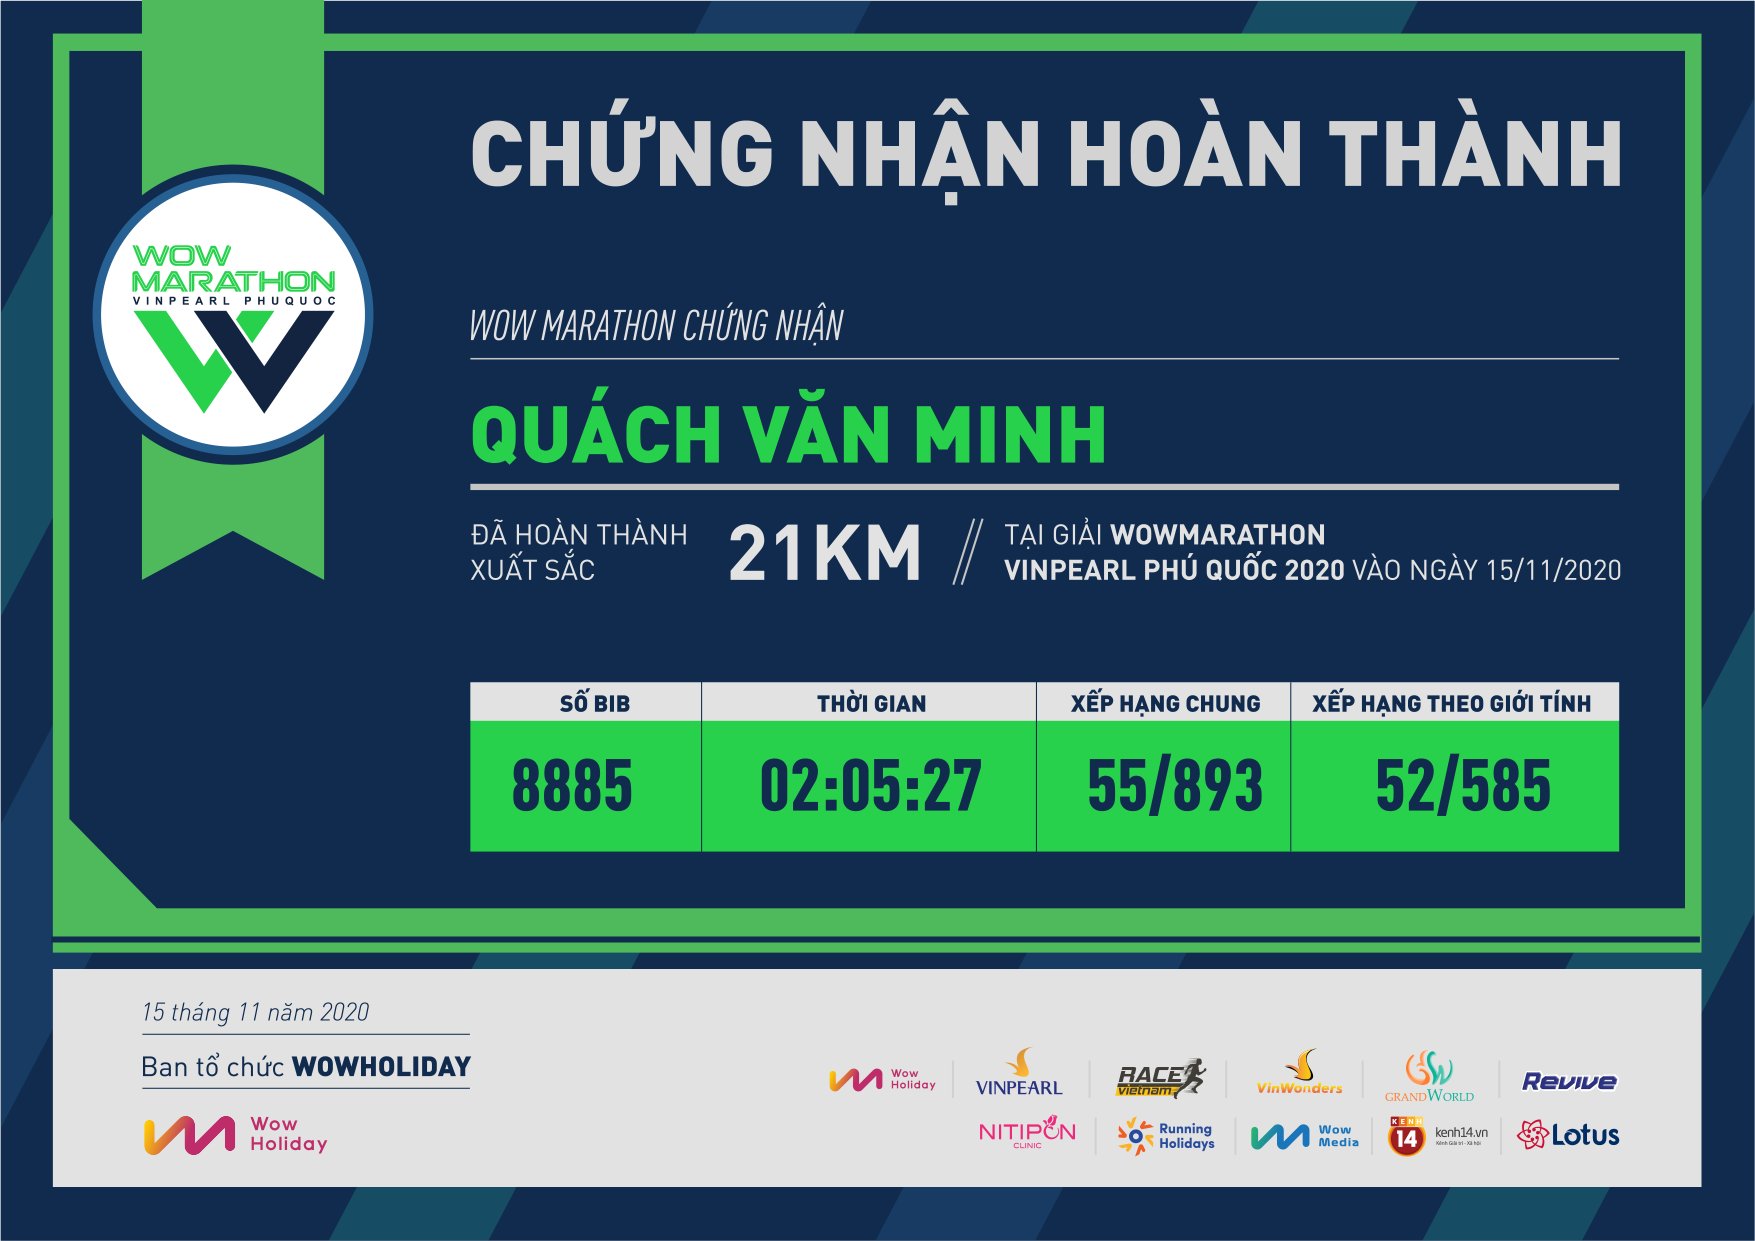 8885 - Quách Văn Minh